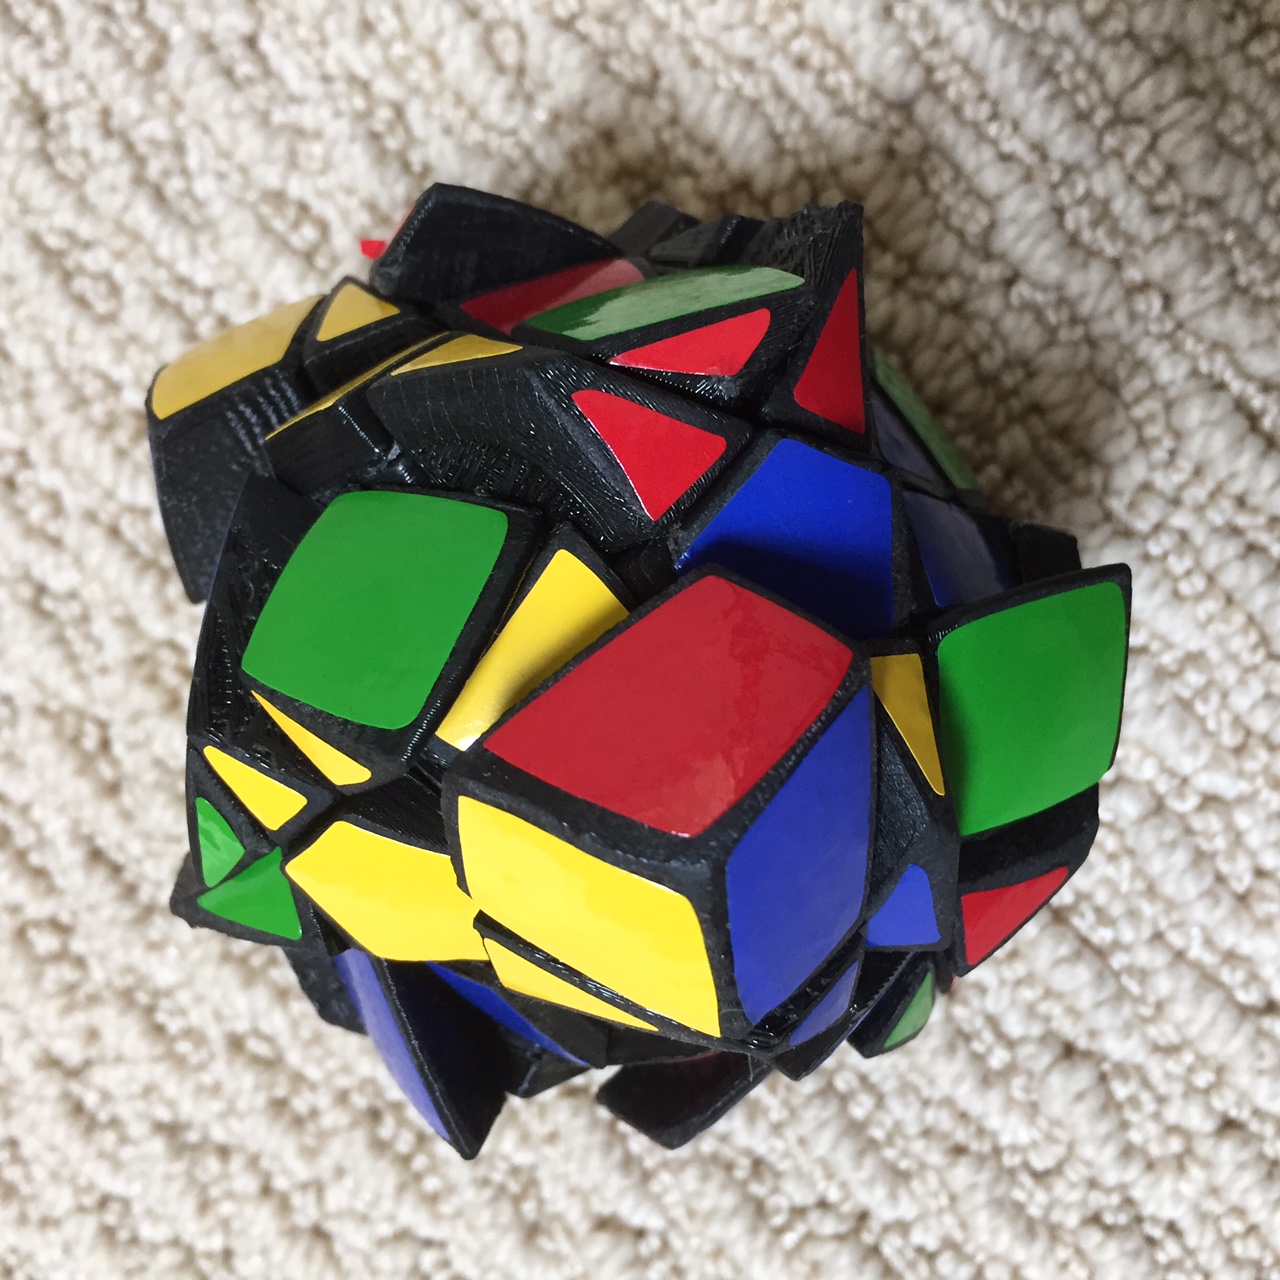 Reuluauxminx (Rubik's Cube-Type Puzzle)